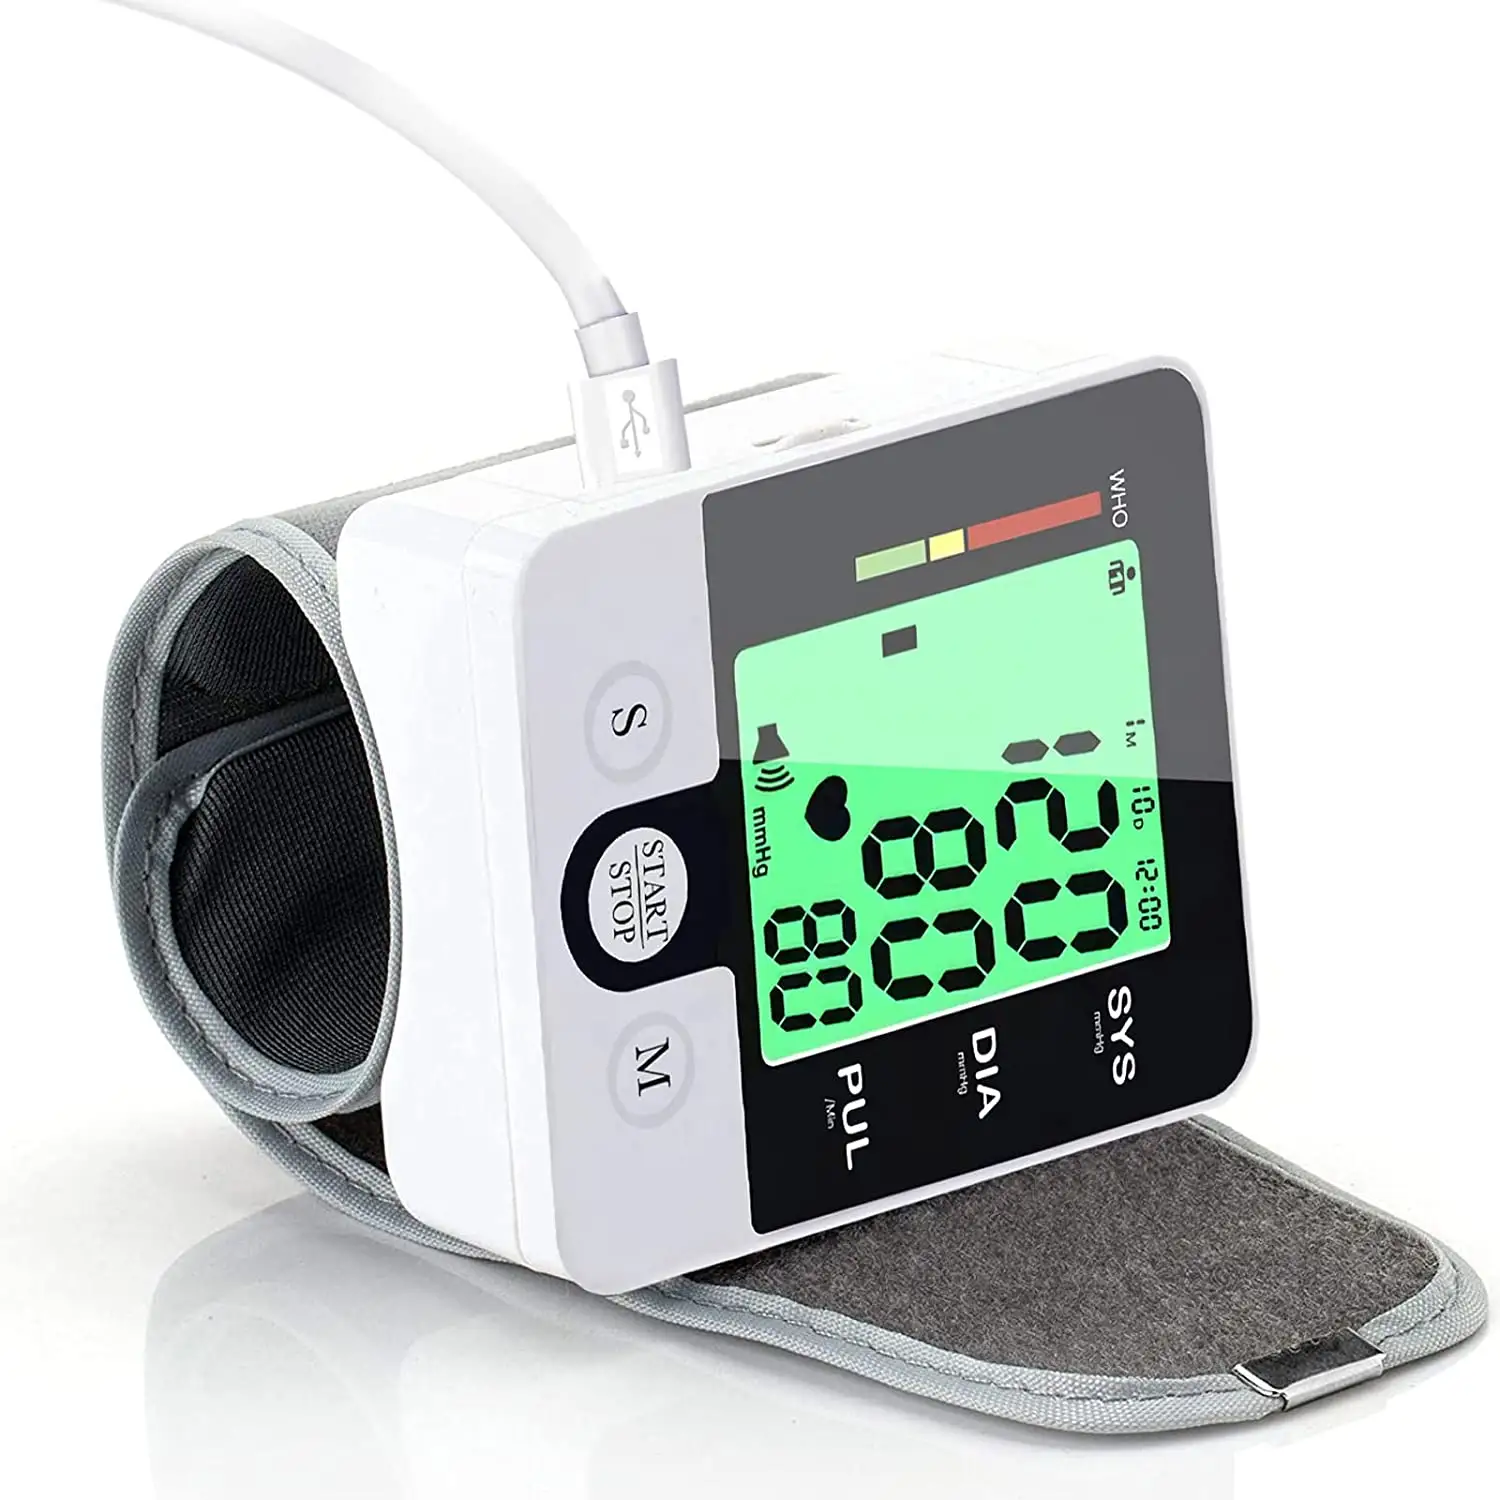 جهاز مراقبة ضغط الدم, جهاز قياس ضغط الدم بثلاثة ألوان ، الأعلى مبيعًا في عام 2021 ، مناسب لكبار السن ، جهاز رقمي لمراقبة ضغط الدم مزود بذراع Bp